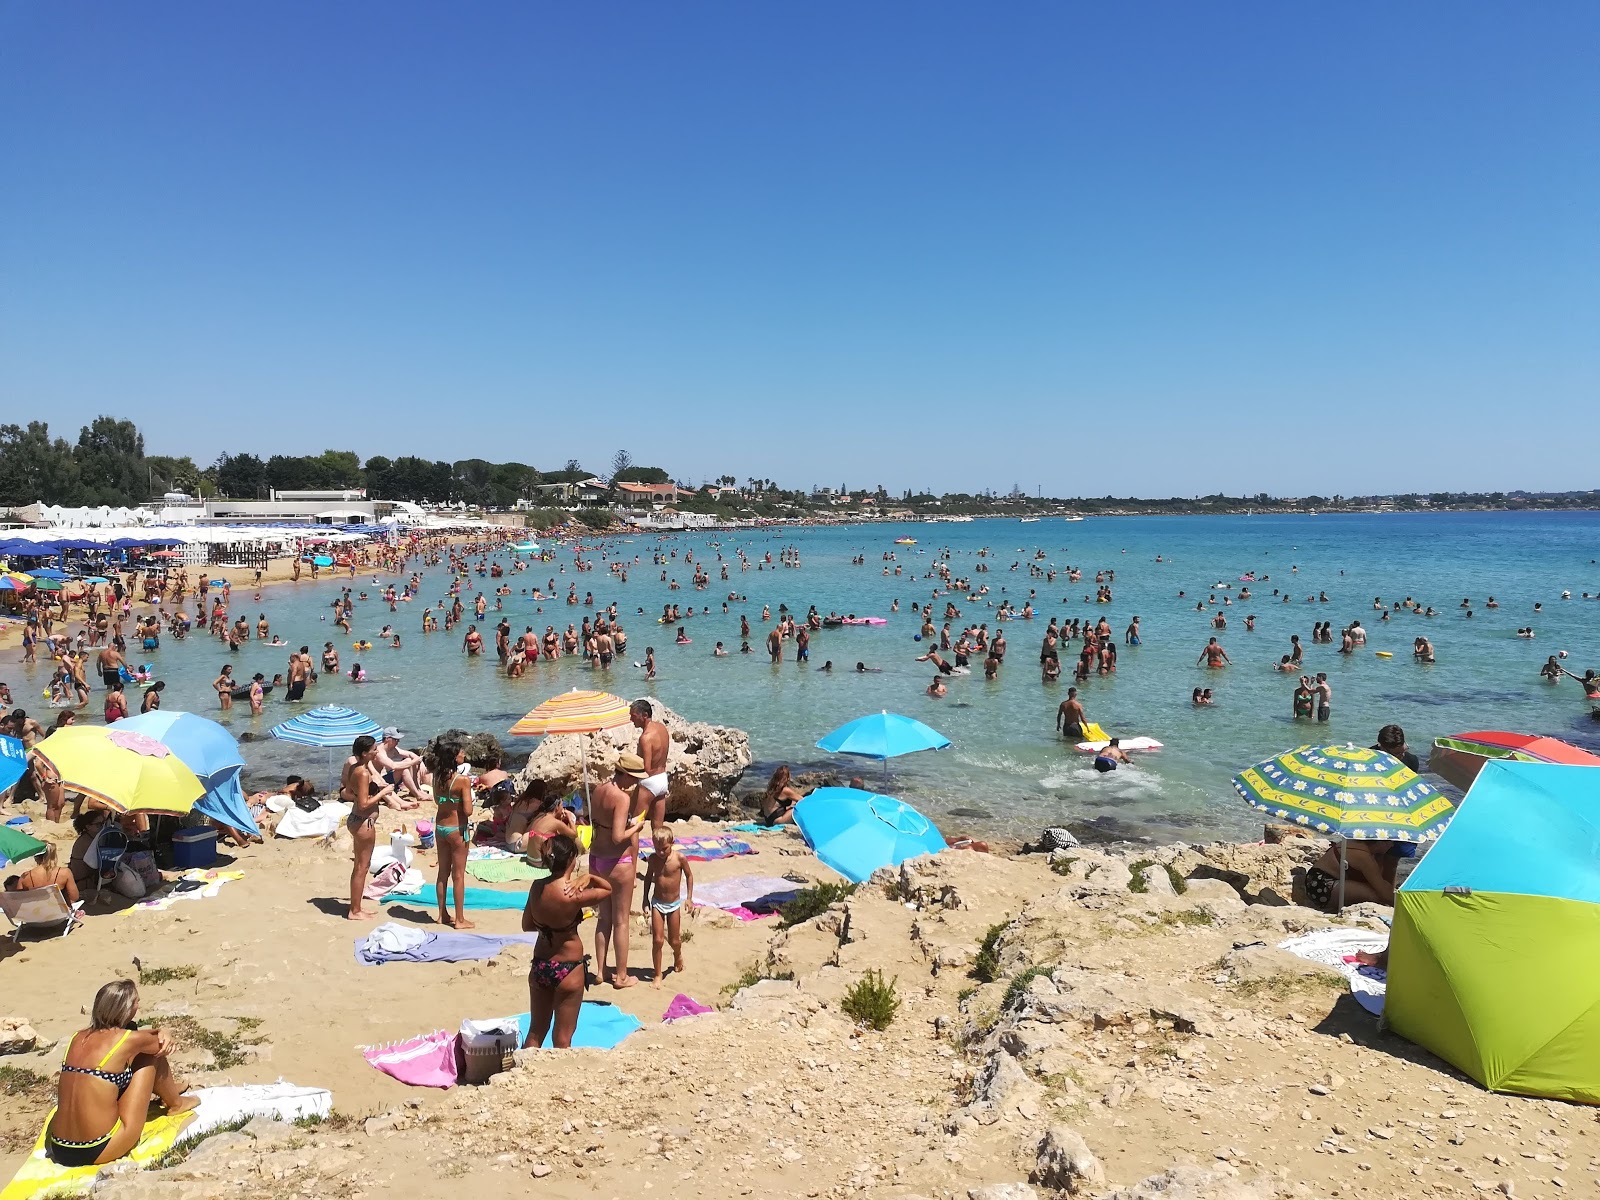 Arenella Plajı'in fotoğrafı - rahatlamayı sevenler arasında popüler bir yer